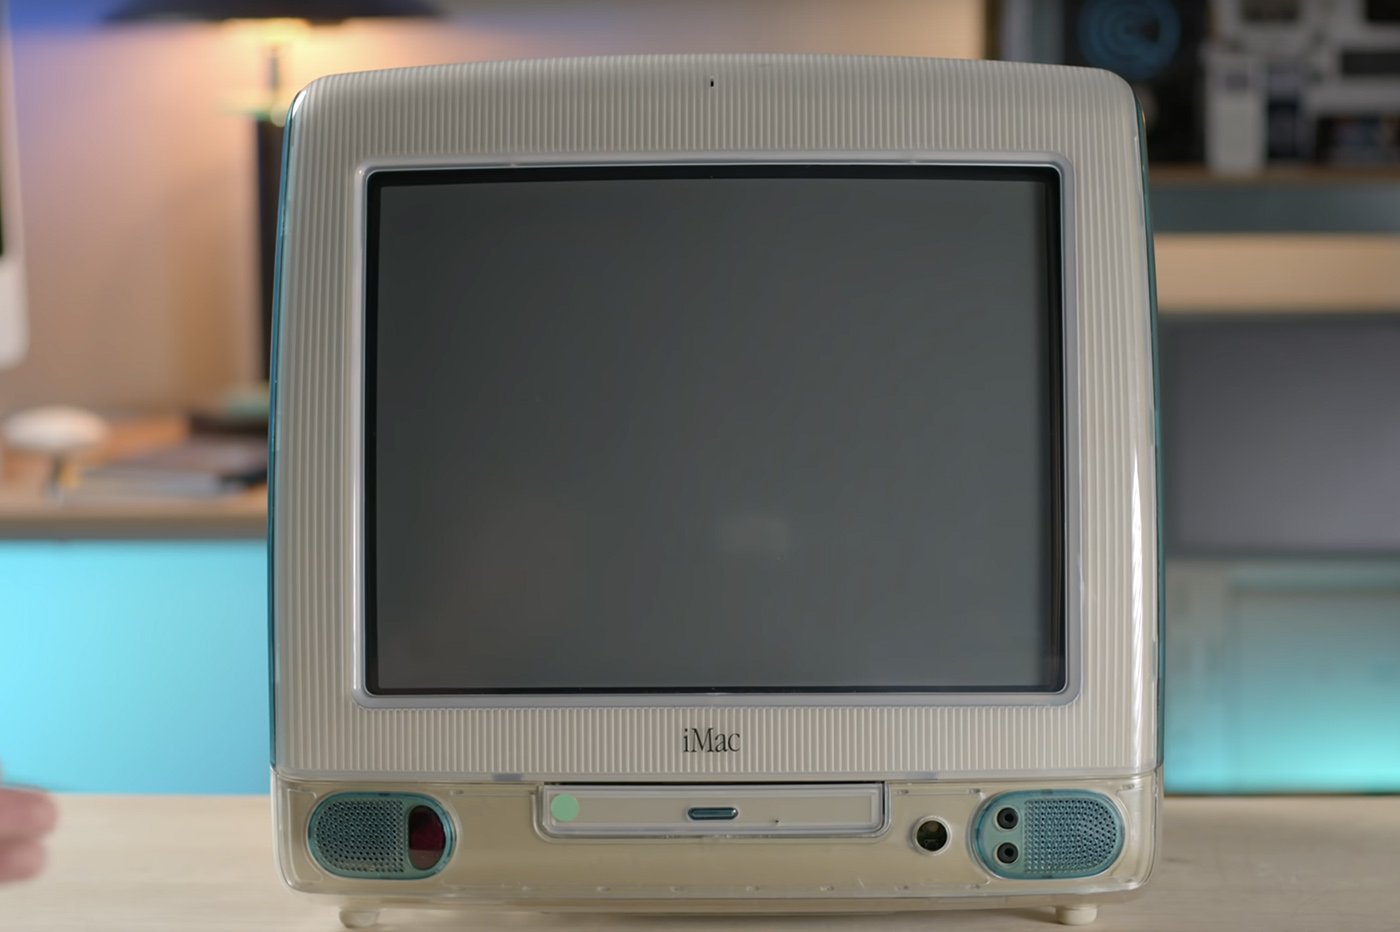 iMac G3 prototype